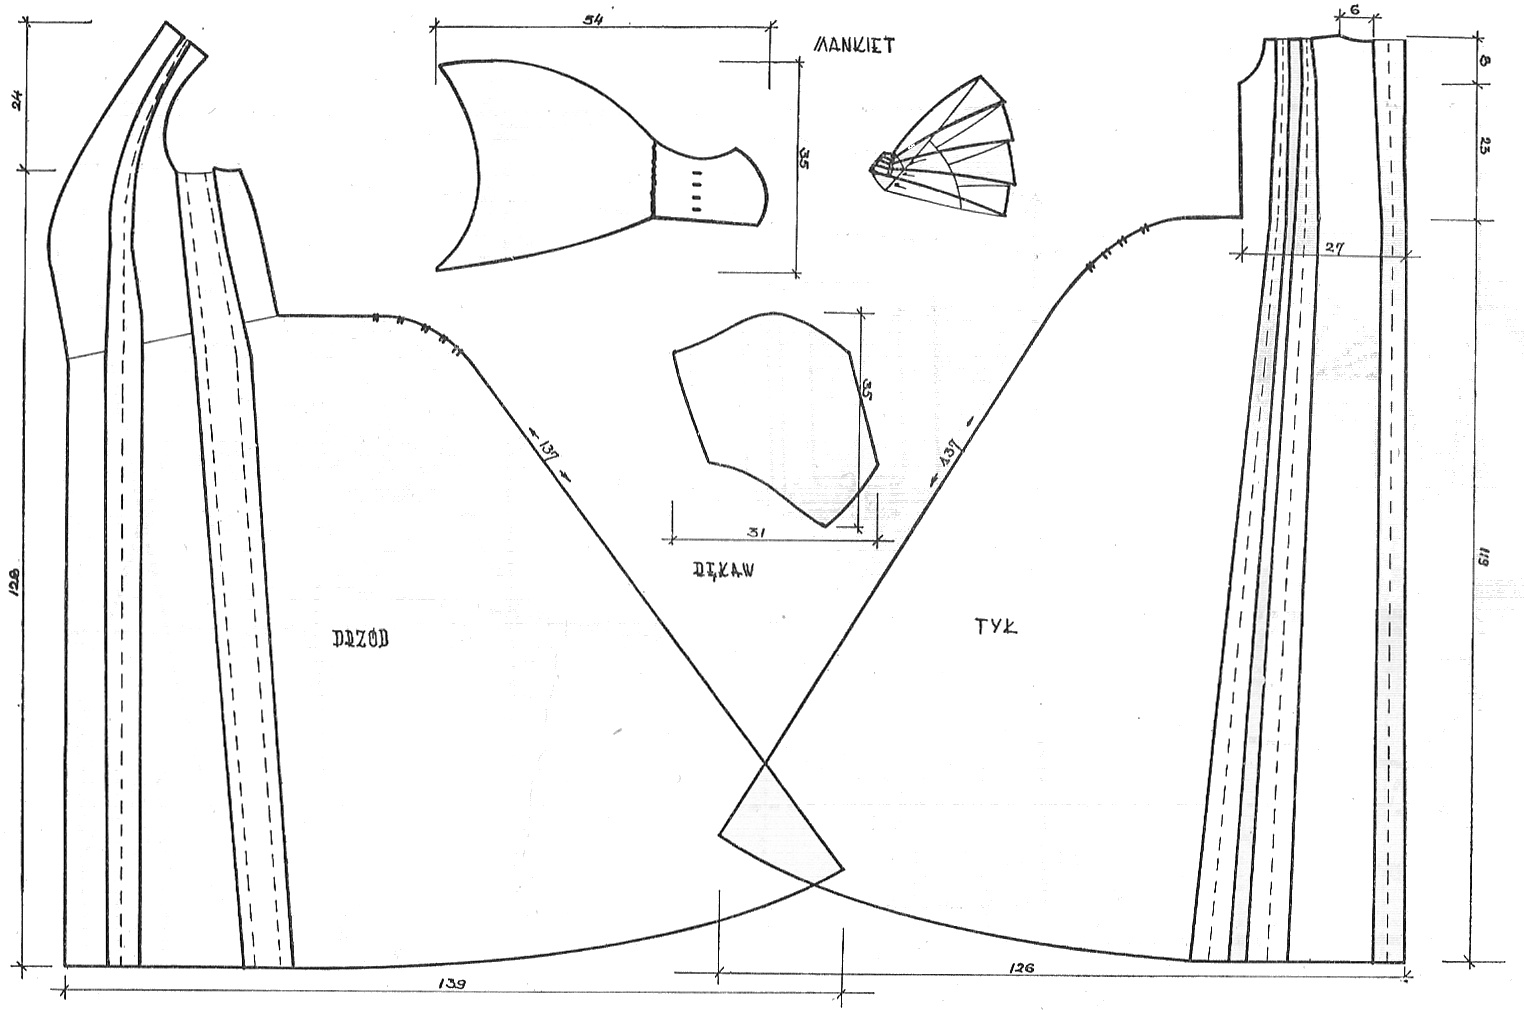 Suknia jedwabna typu deshabillé na owalną rogówkę, poł. XVIII w.